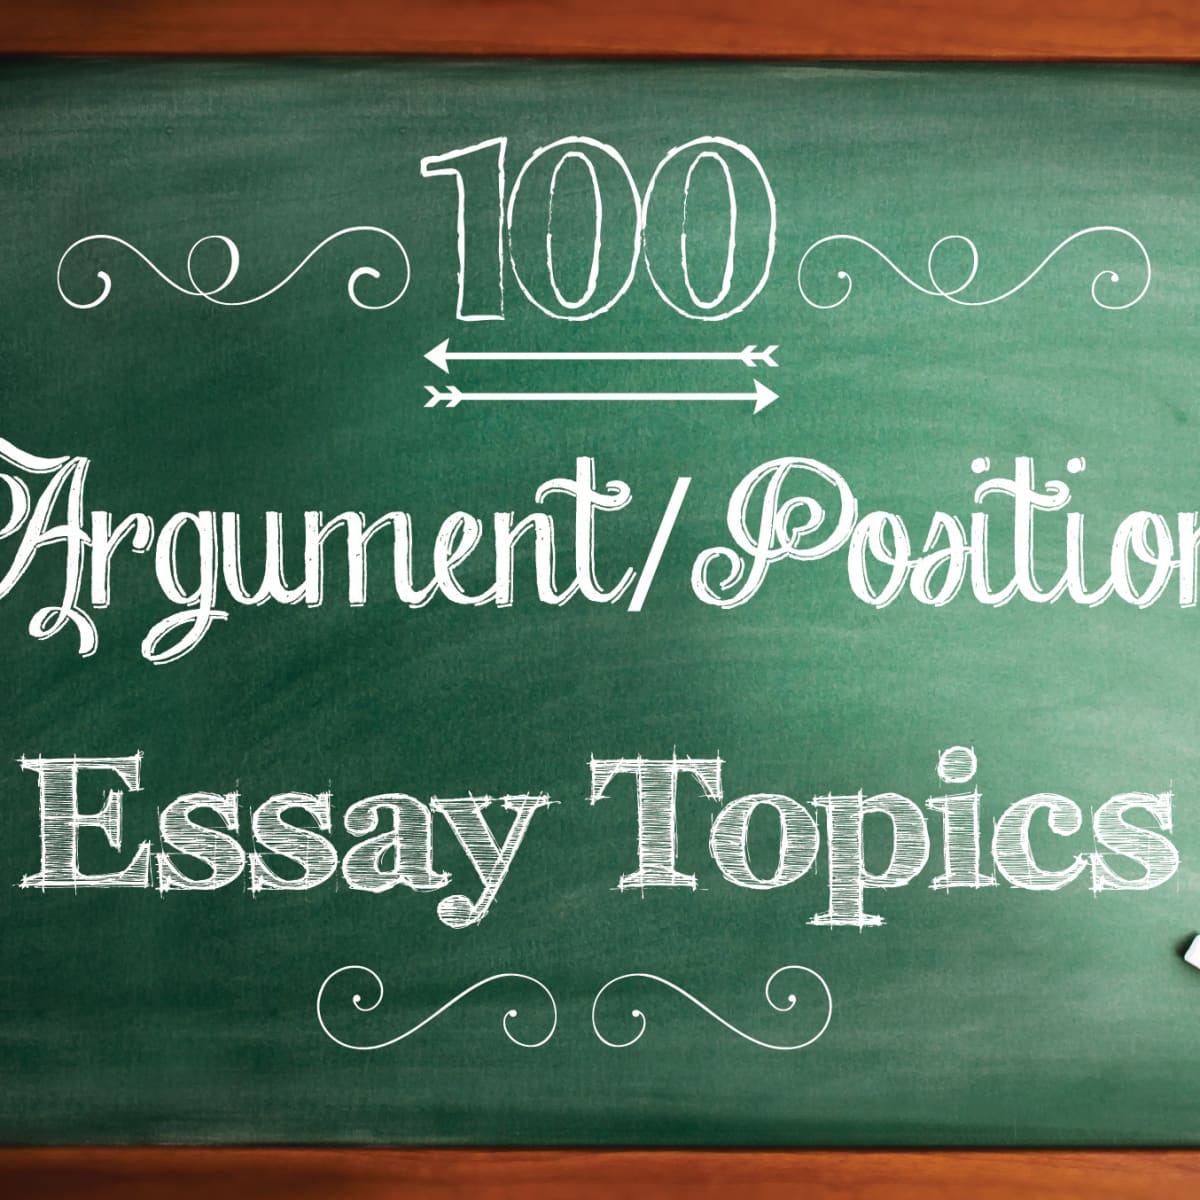 esl argumentative essay topics